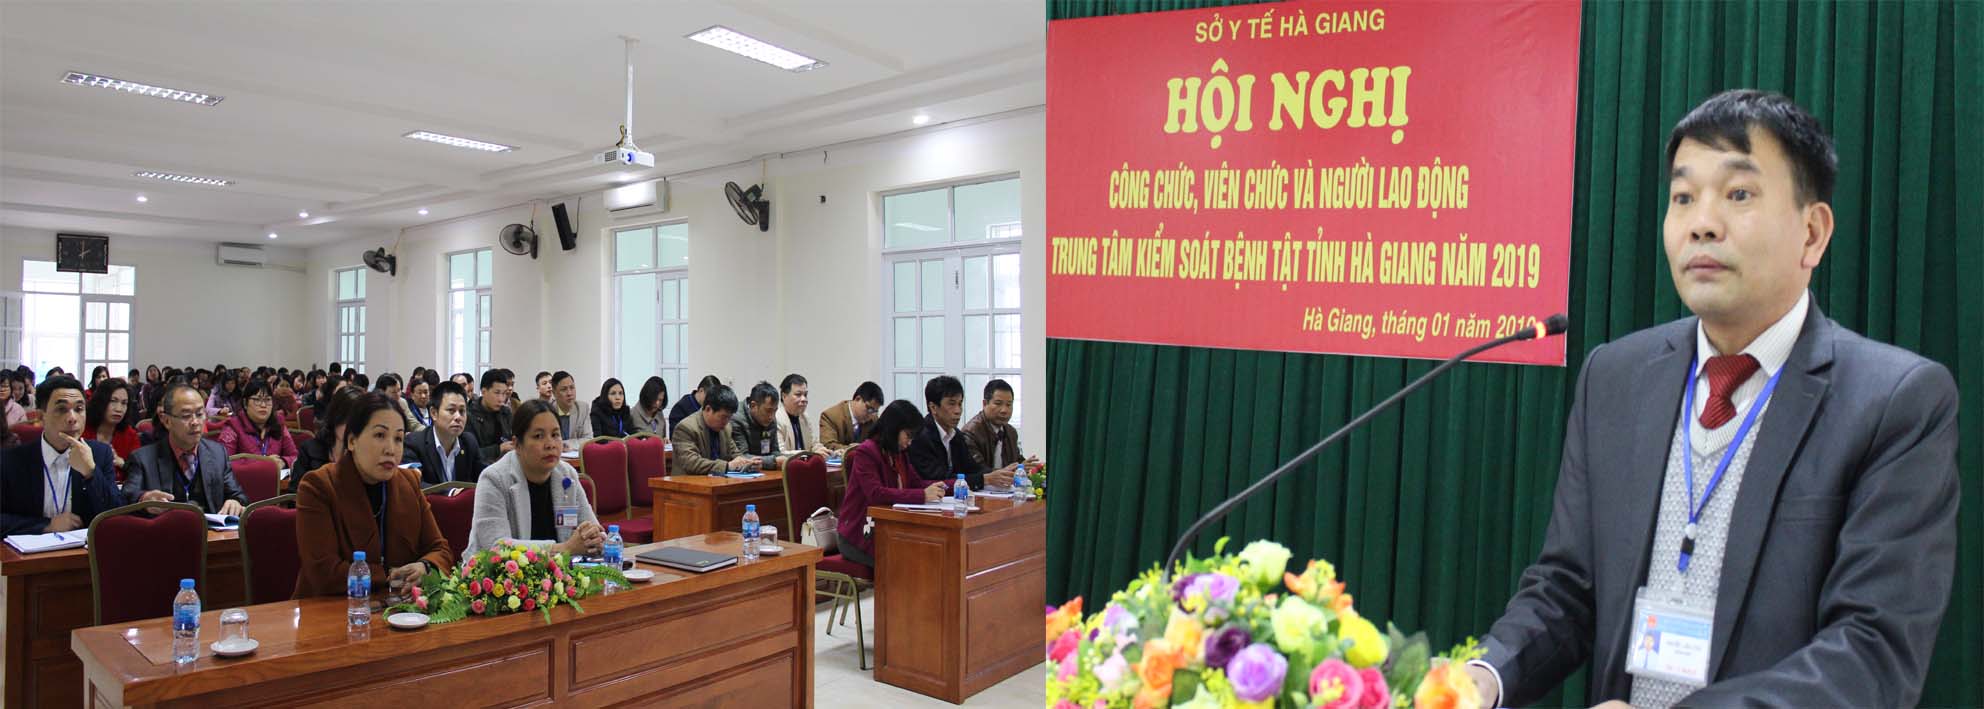 Đồng chí Nguyễn Trần Tuấn, Giám đốc Trung tâm Kiểm soát bệnh tật phát biểu khai mạc Hội nghị